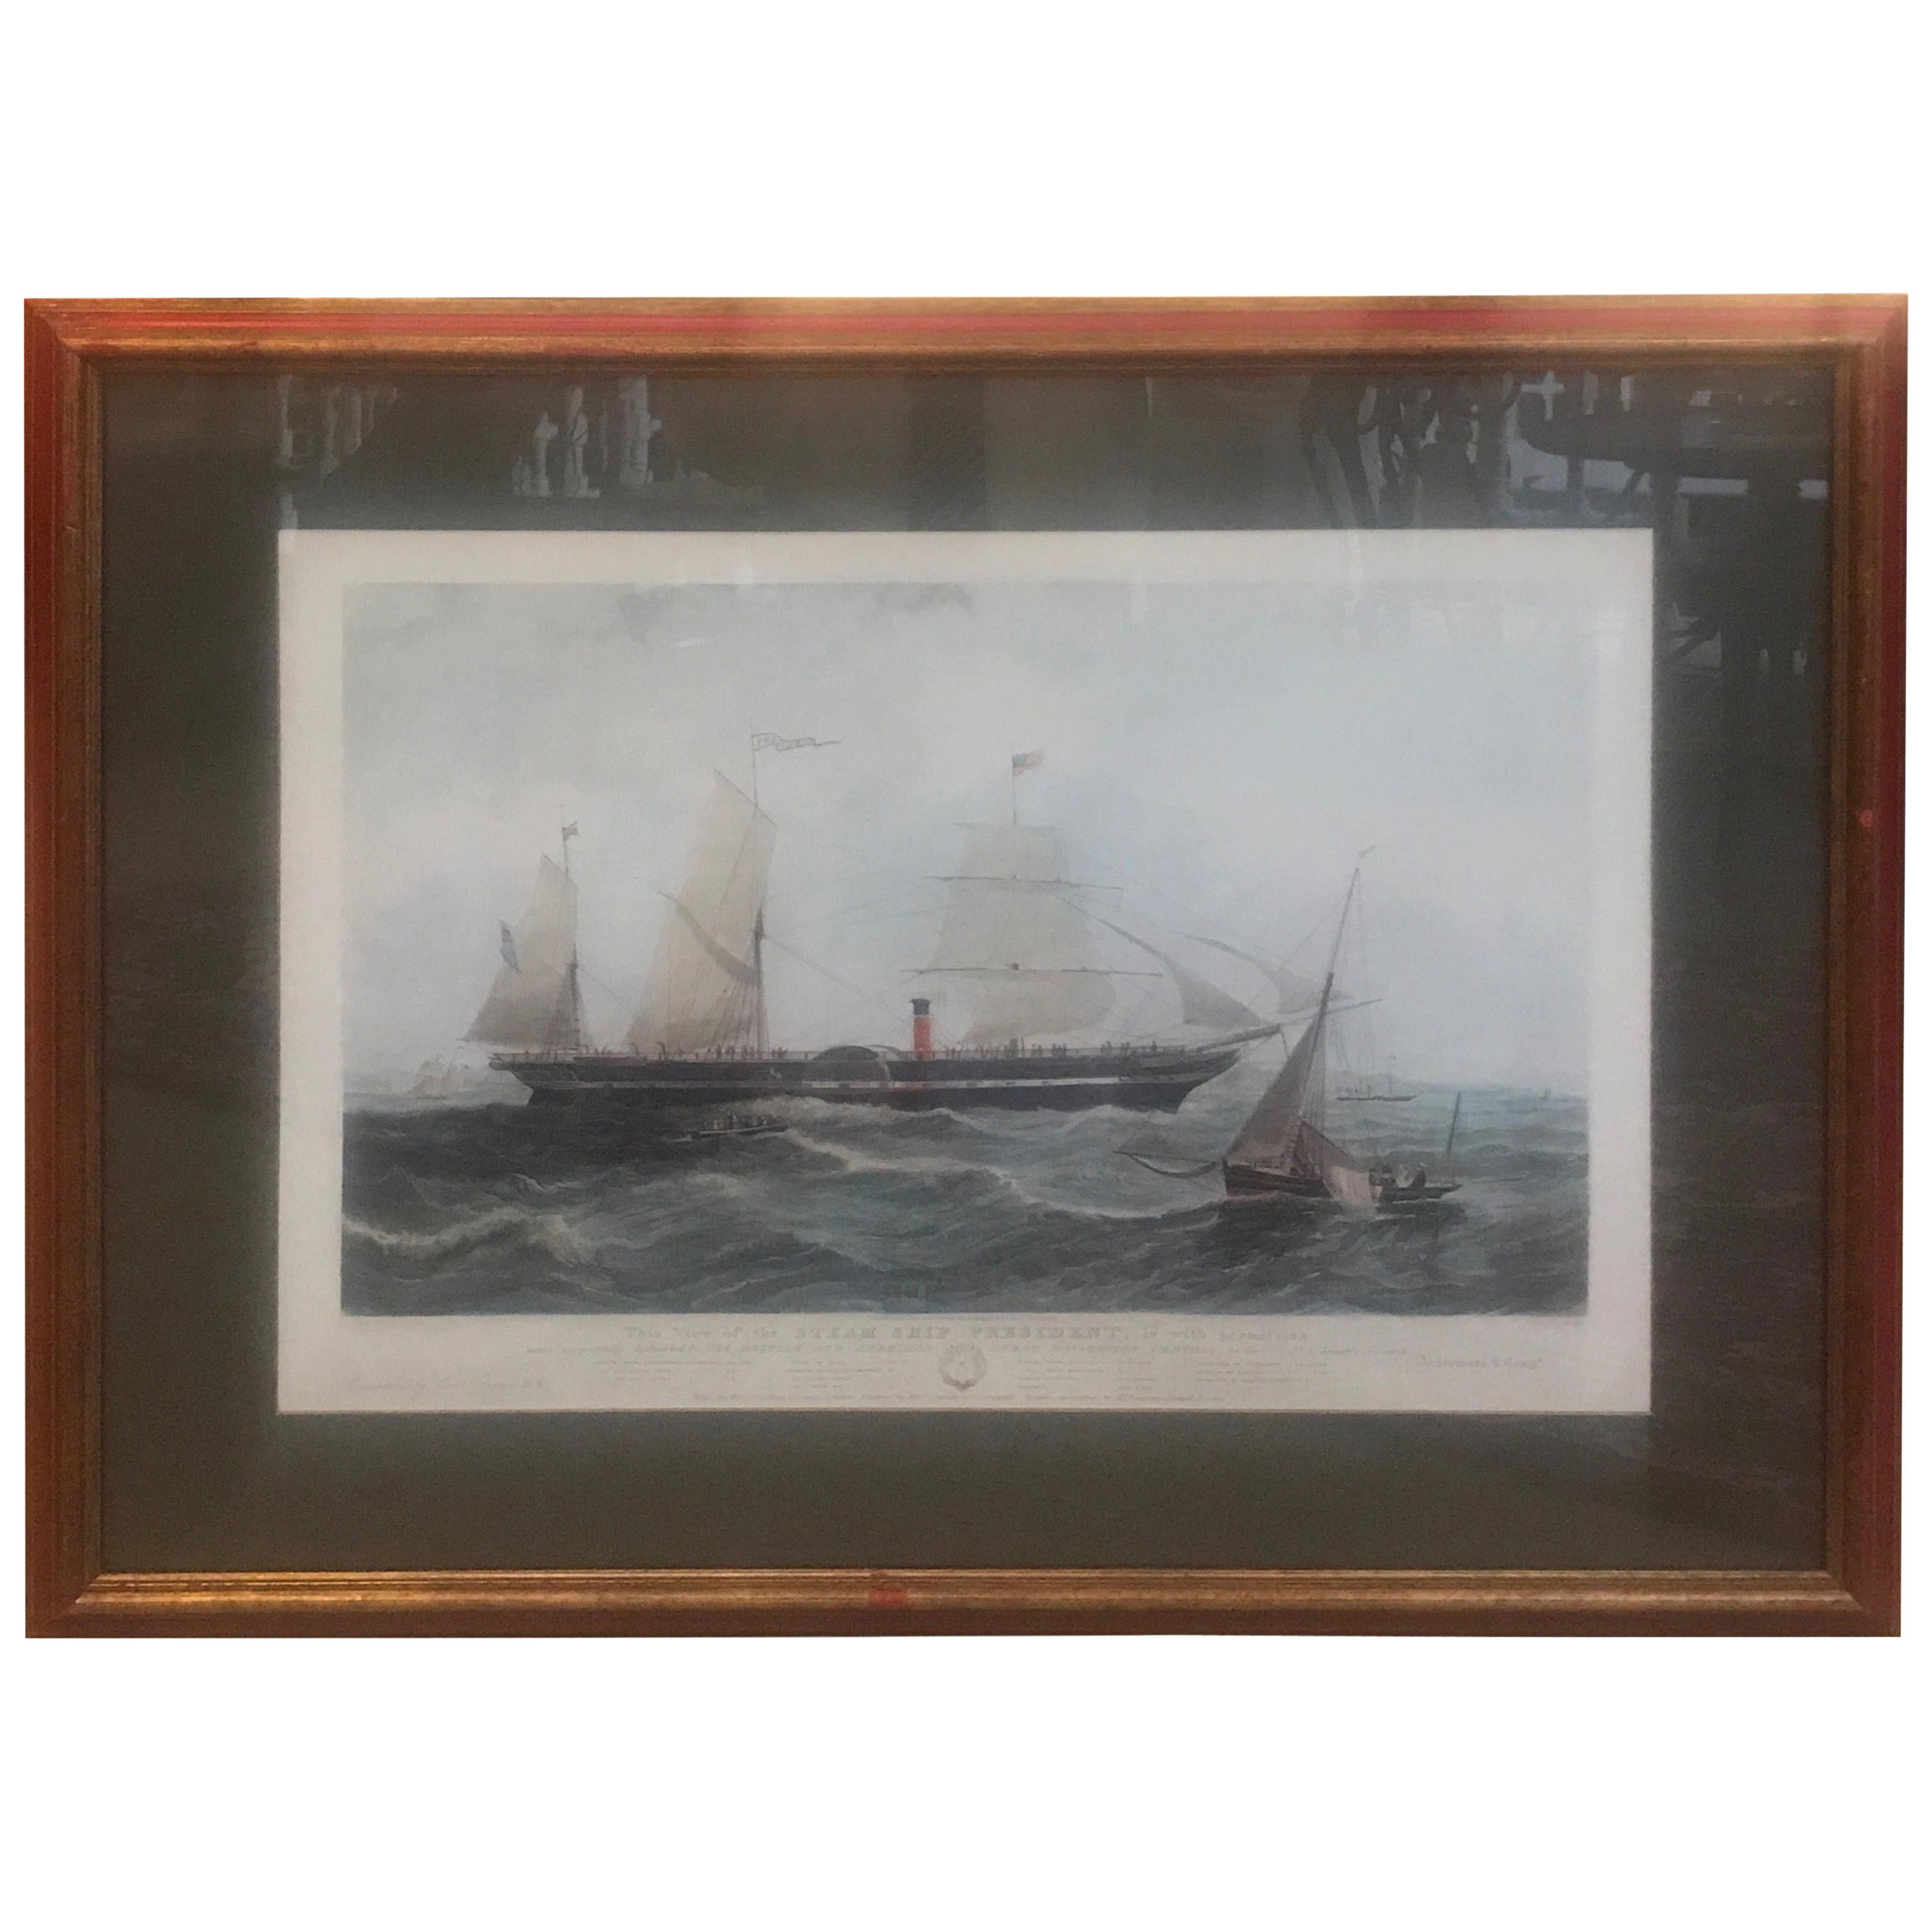 Ancienne gravure de voilier nautique américaine colorée à la main